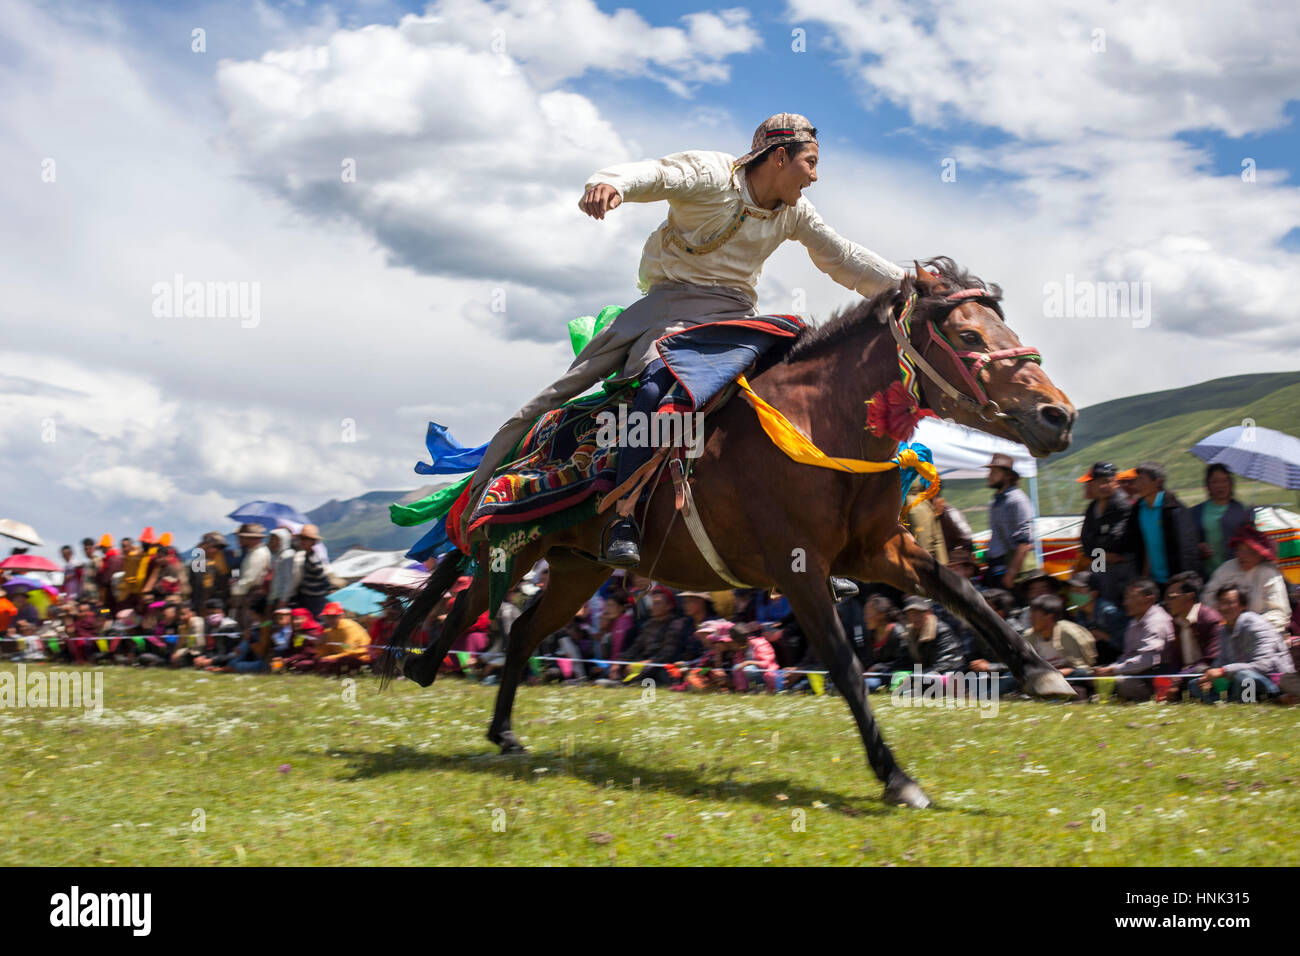 Khampa homme monter des chevaux au cours de la fête du cheval Manigango dans la région du Plateau tibétain dans le Sichuan, Chine. Banque D'Images